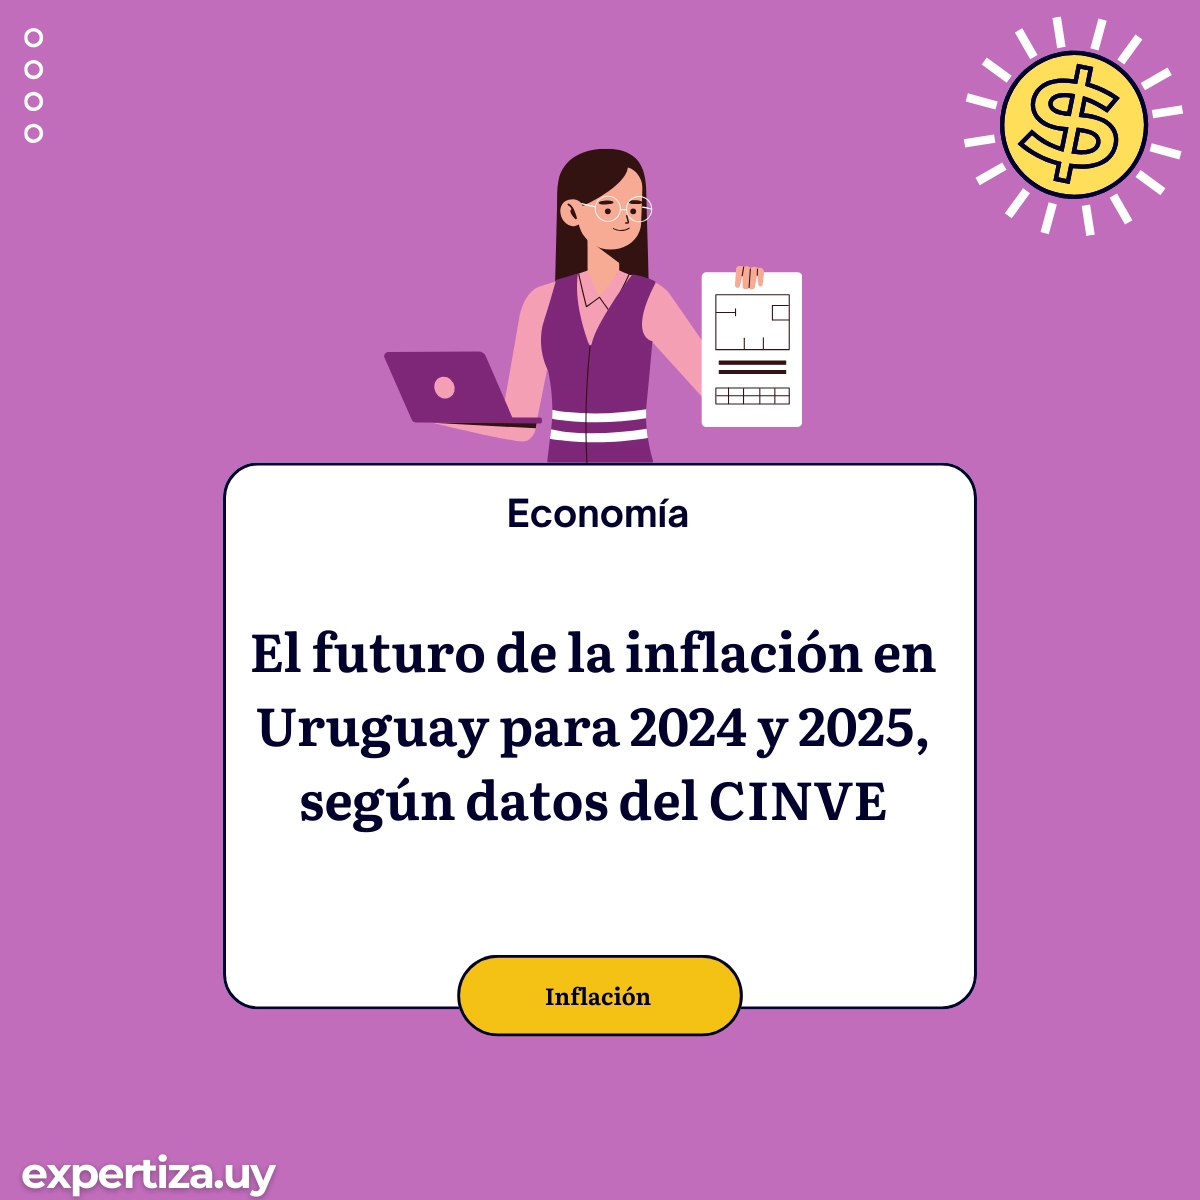 El futuro de la inflación en Uruguay para 2024 y 2025, según datos del CINVE.